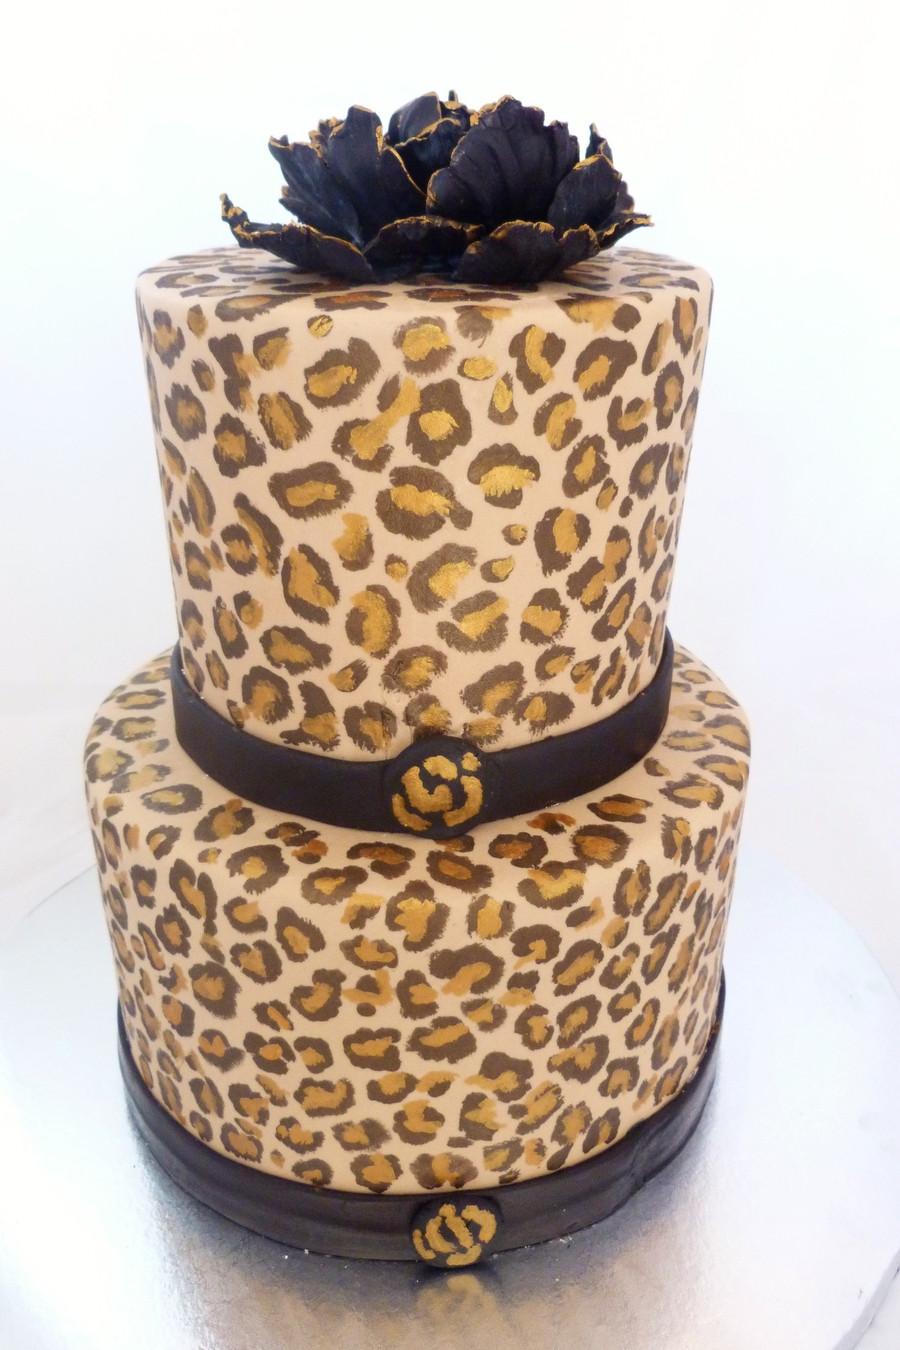 Cheetah Print Birthday Cake
 Handpainted Cheetah Print Cake CakeCentral